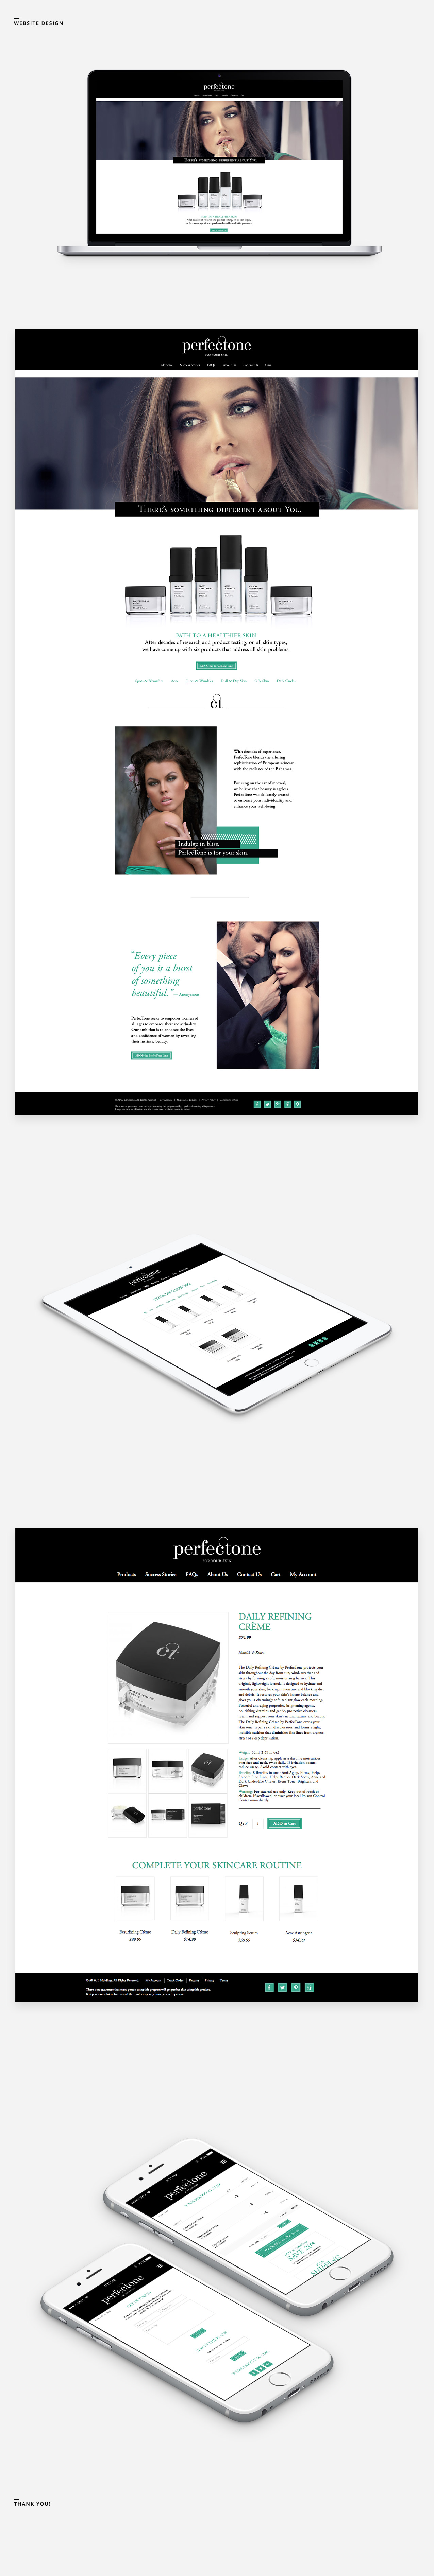 PerfecTone Website Design